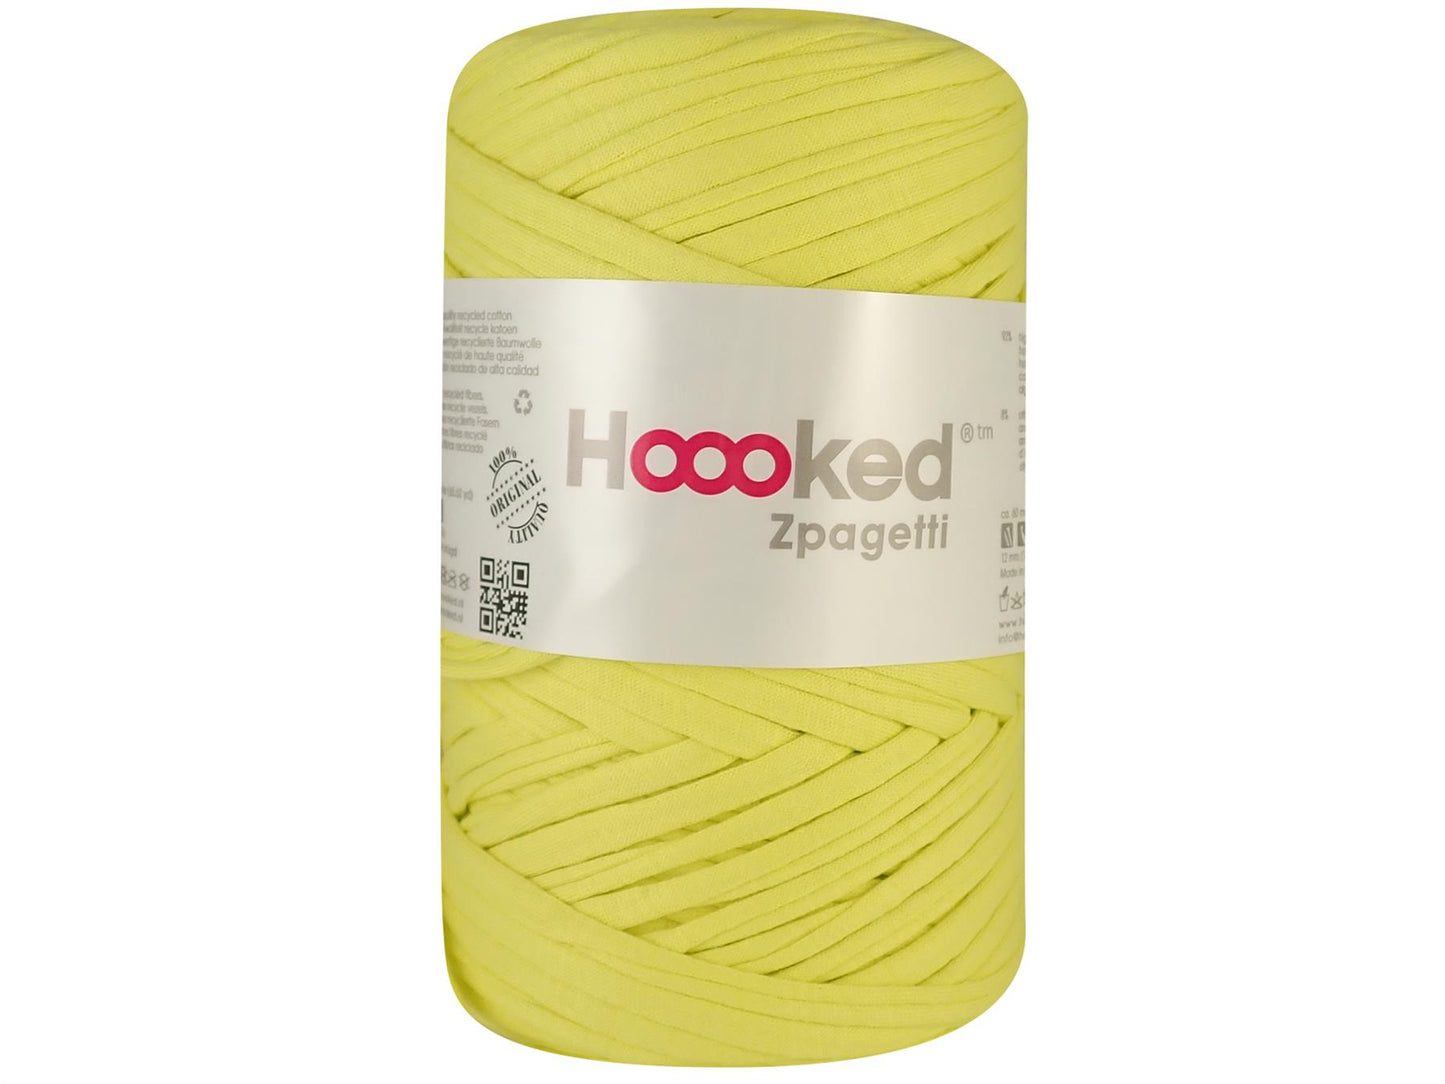 Hoooked Zpagetti Bright Yellow Cotton T-Shirt Yarn - 60M 350g